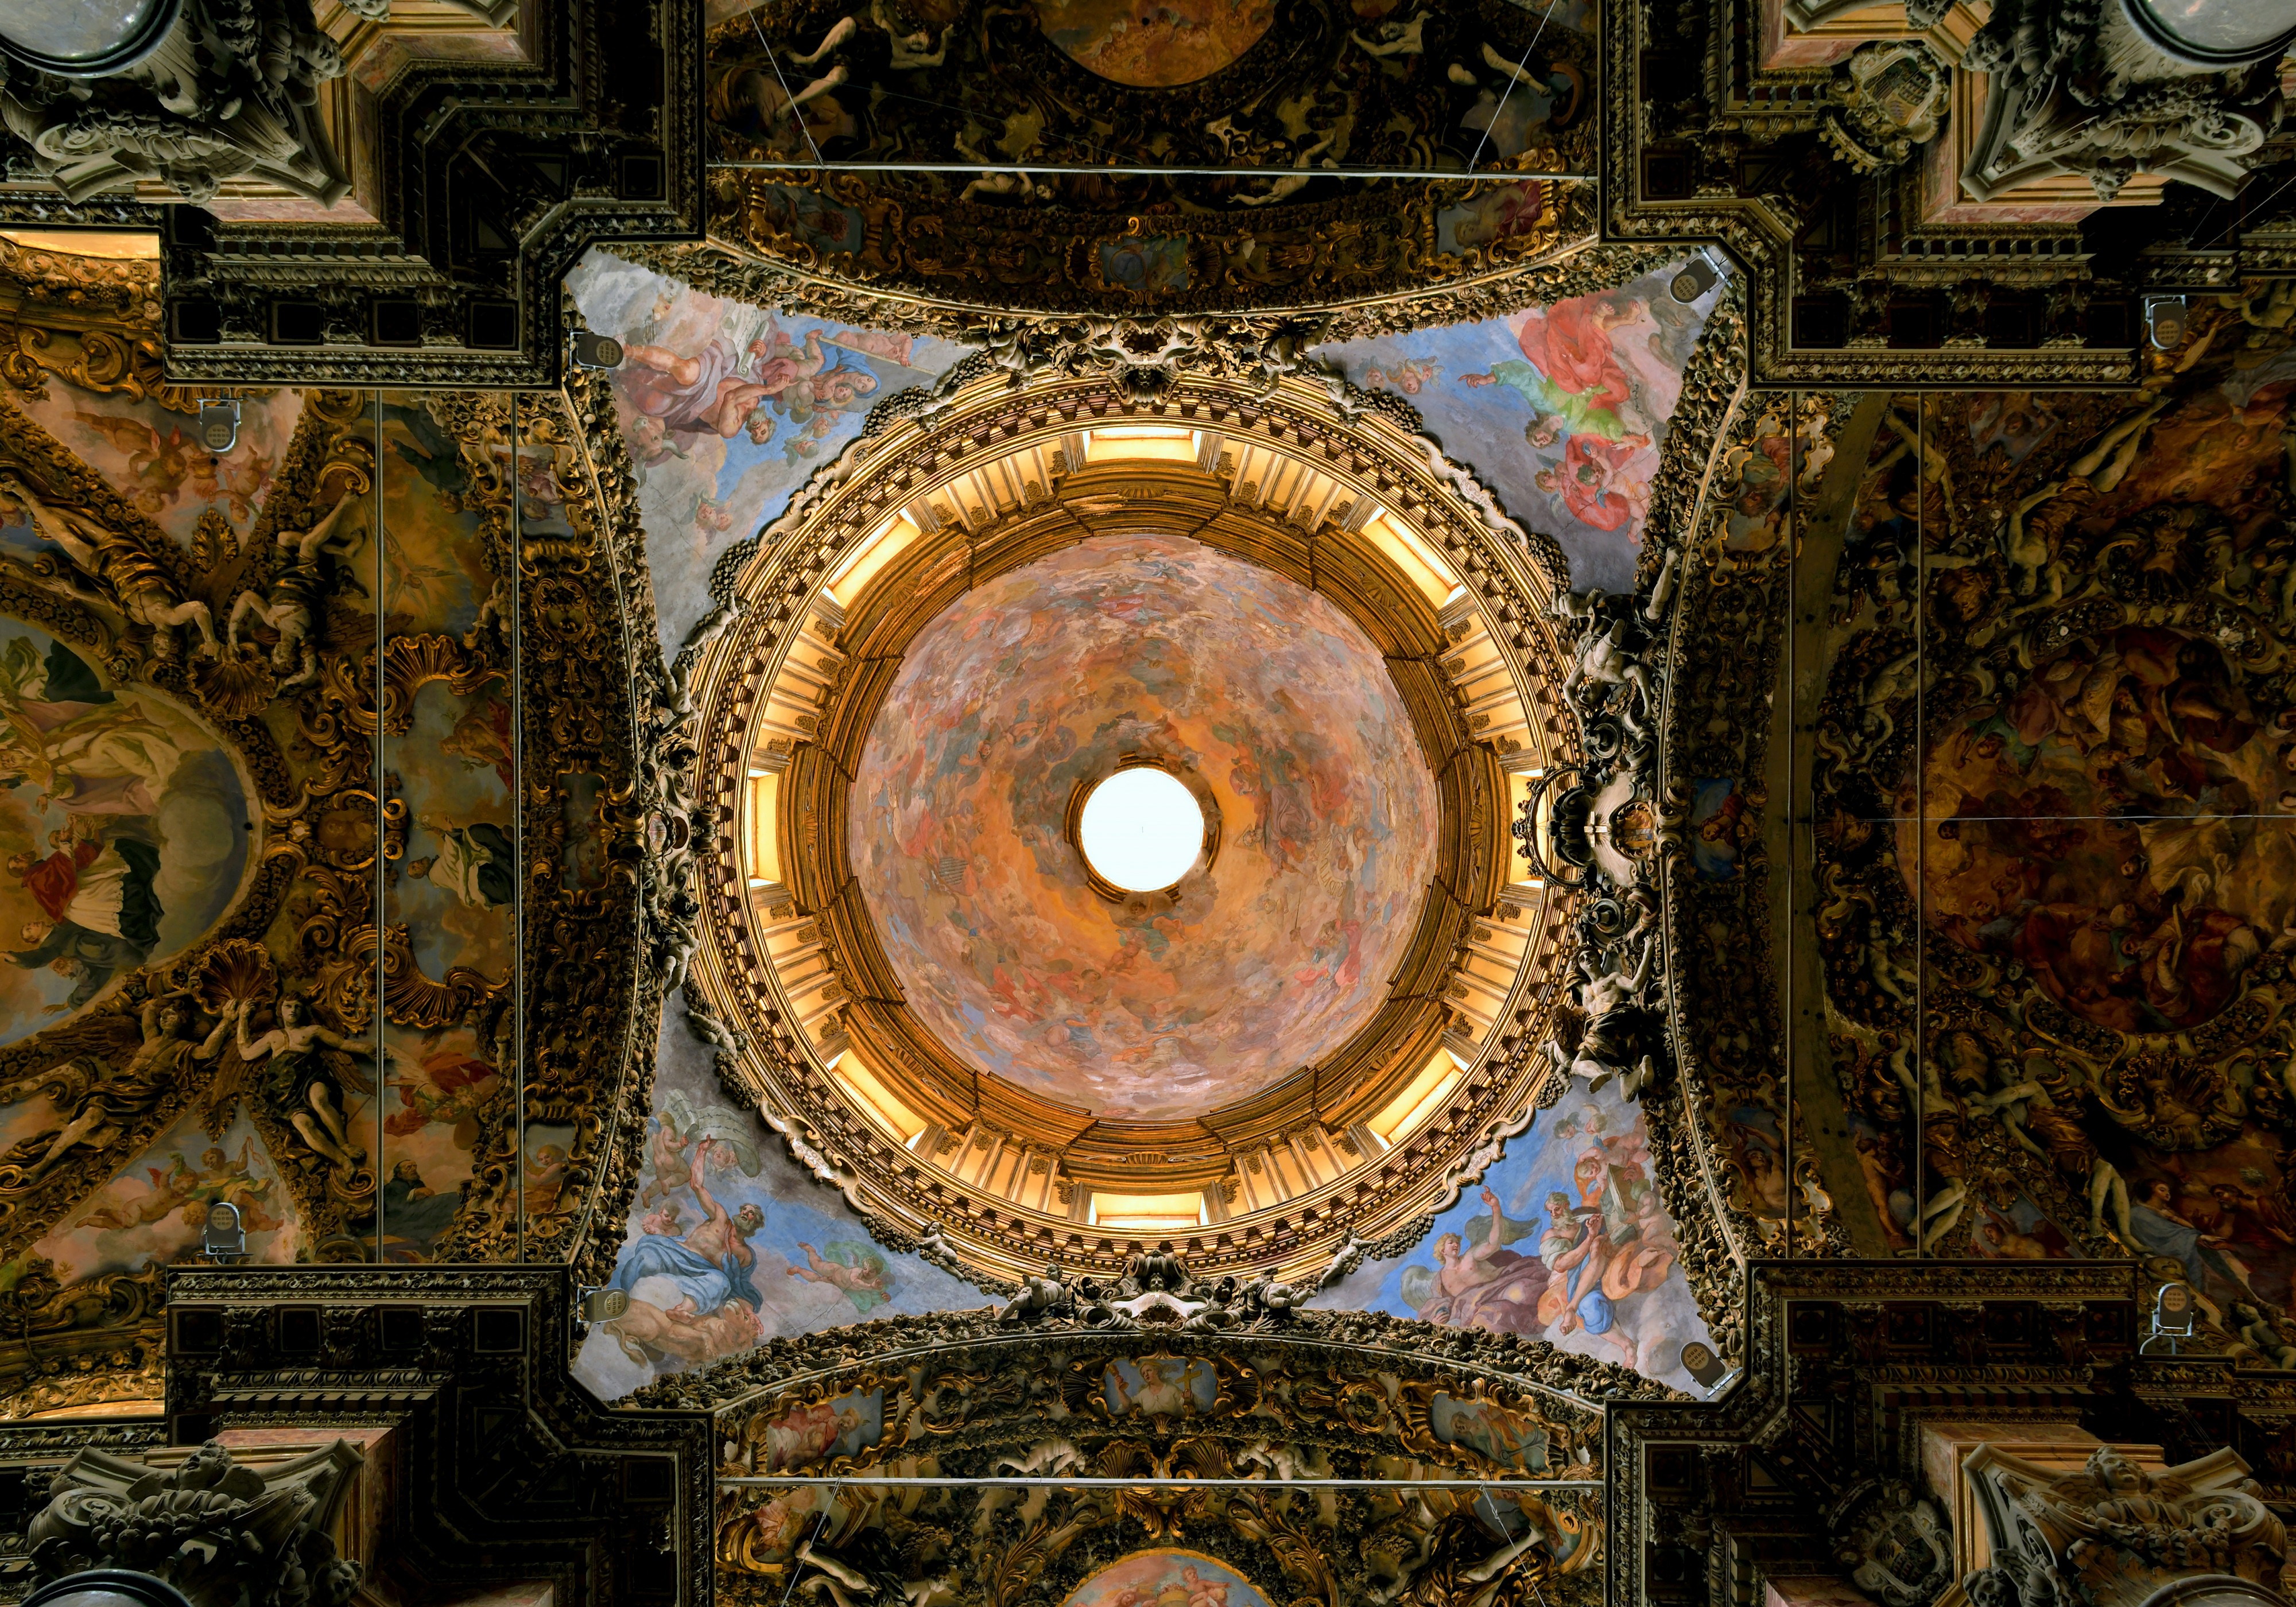 San Giuseppe dei Teatini (Palermo) - Dome